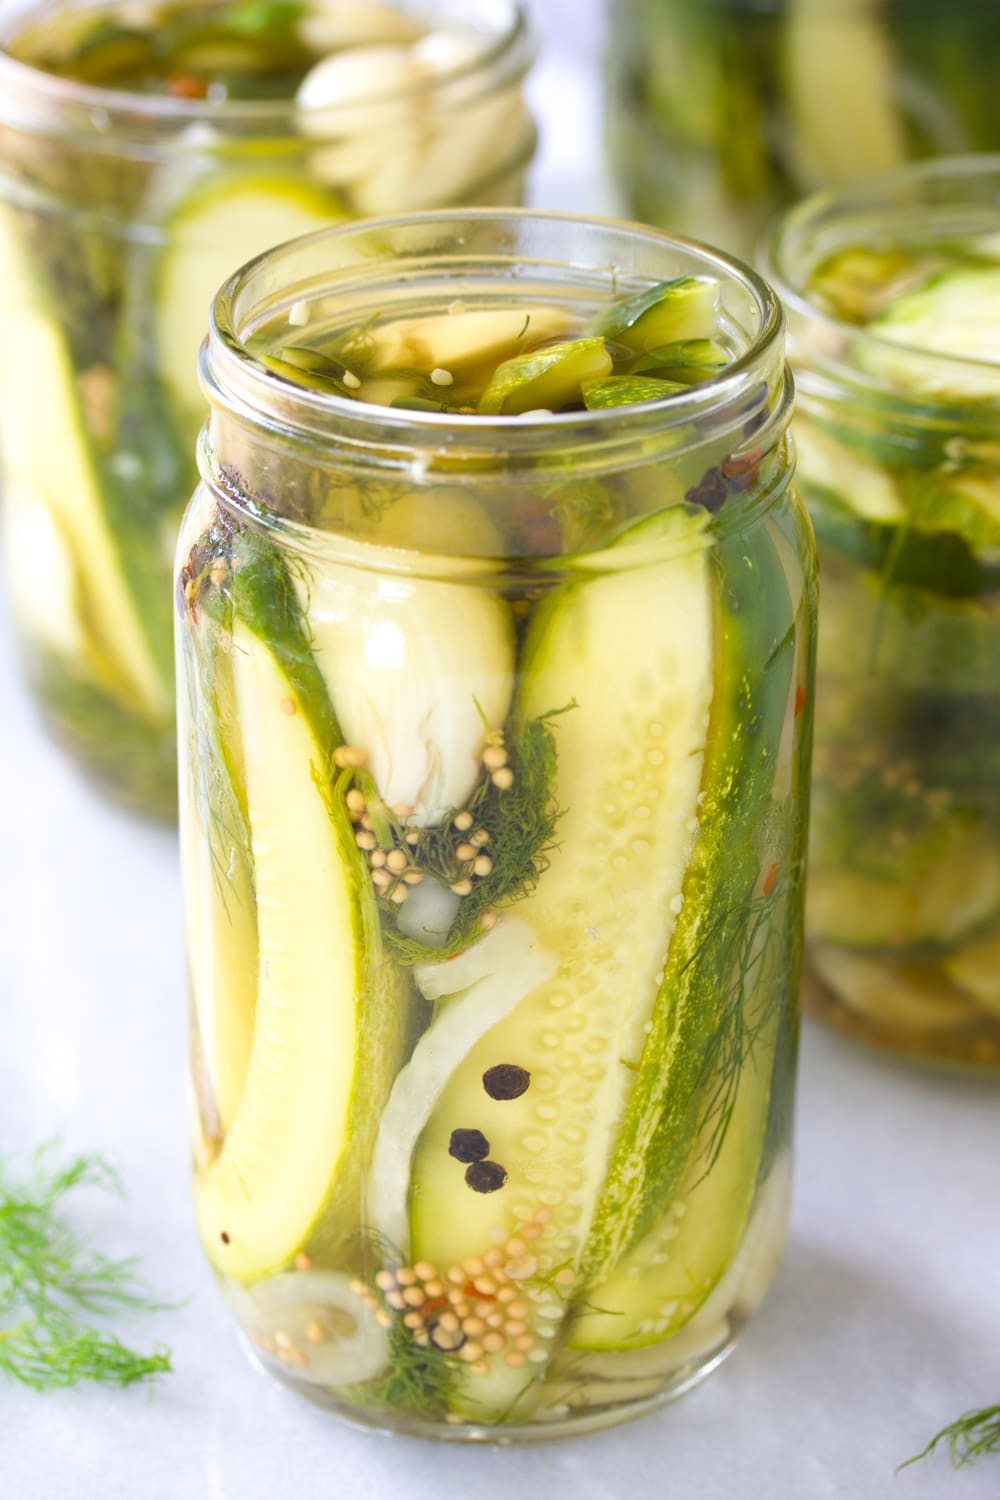 Best Refrigerator Pickles #ASpicyPerspective #Pickles #RefrigeratorPickles #HomemadePickles #PickleRecipe #HowtoMakePickles